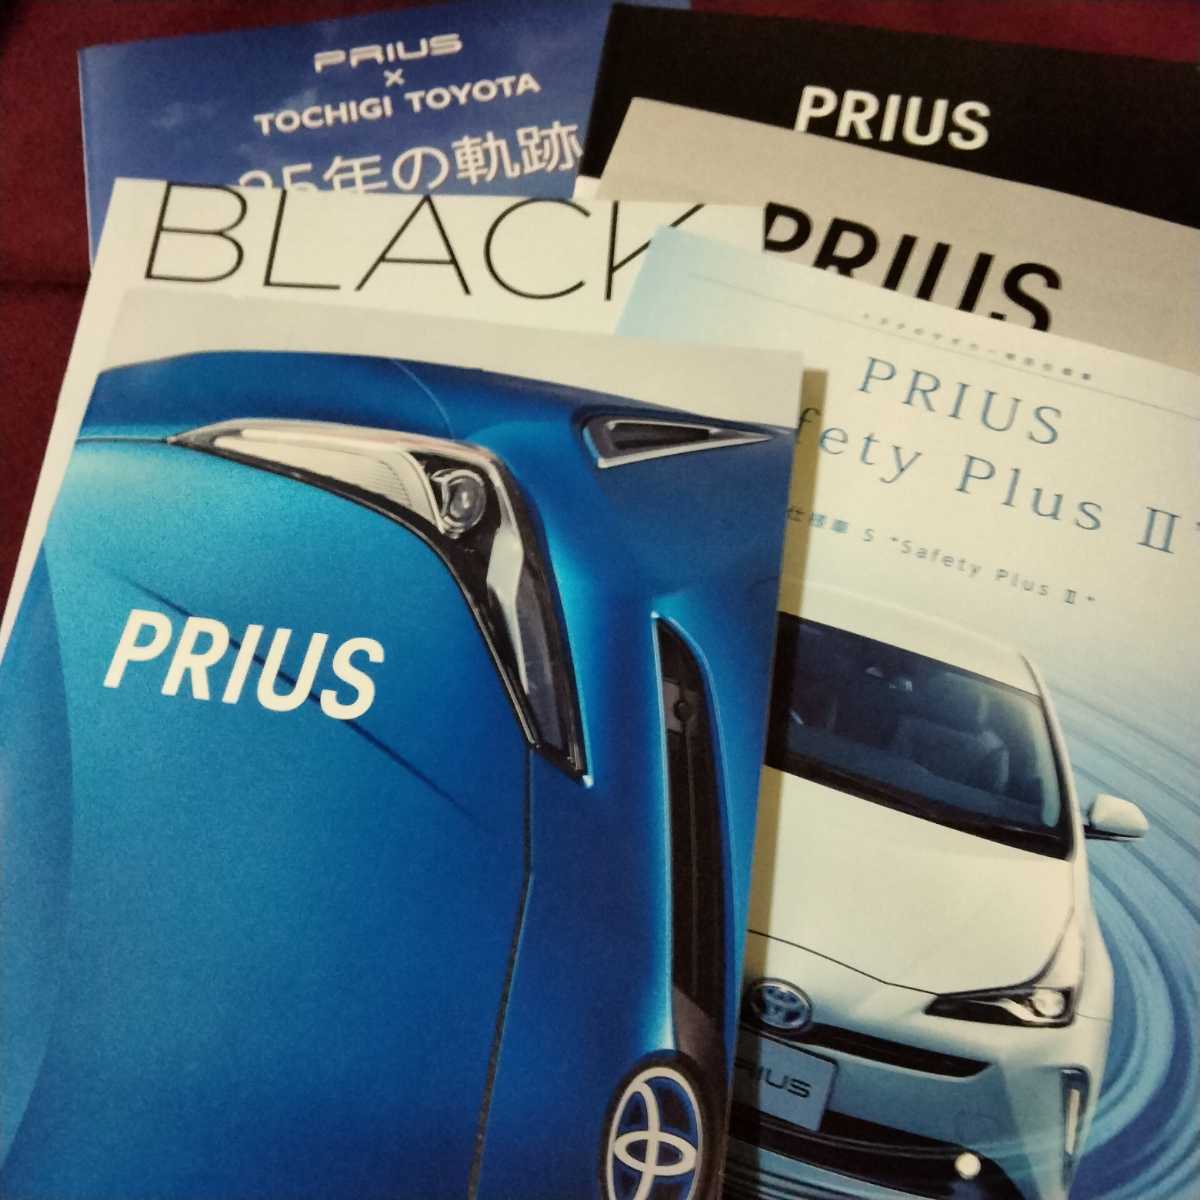 . плата последняя модель Toyota Prius каталог комплект основной каталог 61P аксессуары каталог запчастей navi каталог специальный выпуск Special производства брошюра есть 